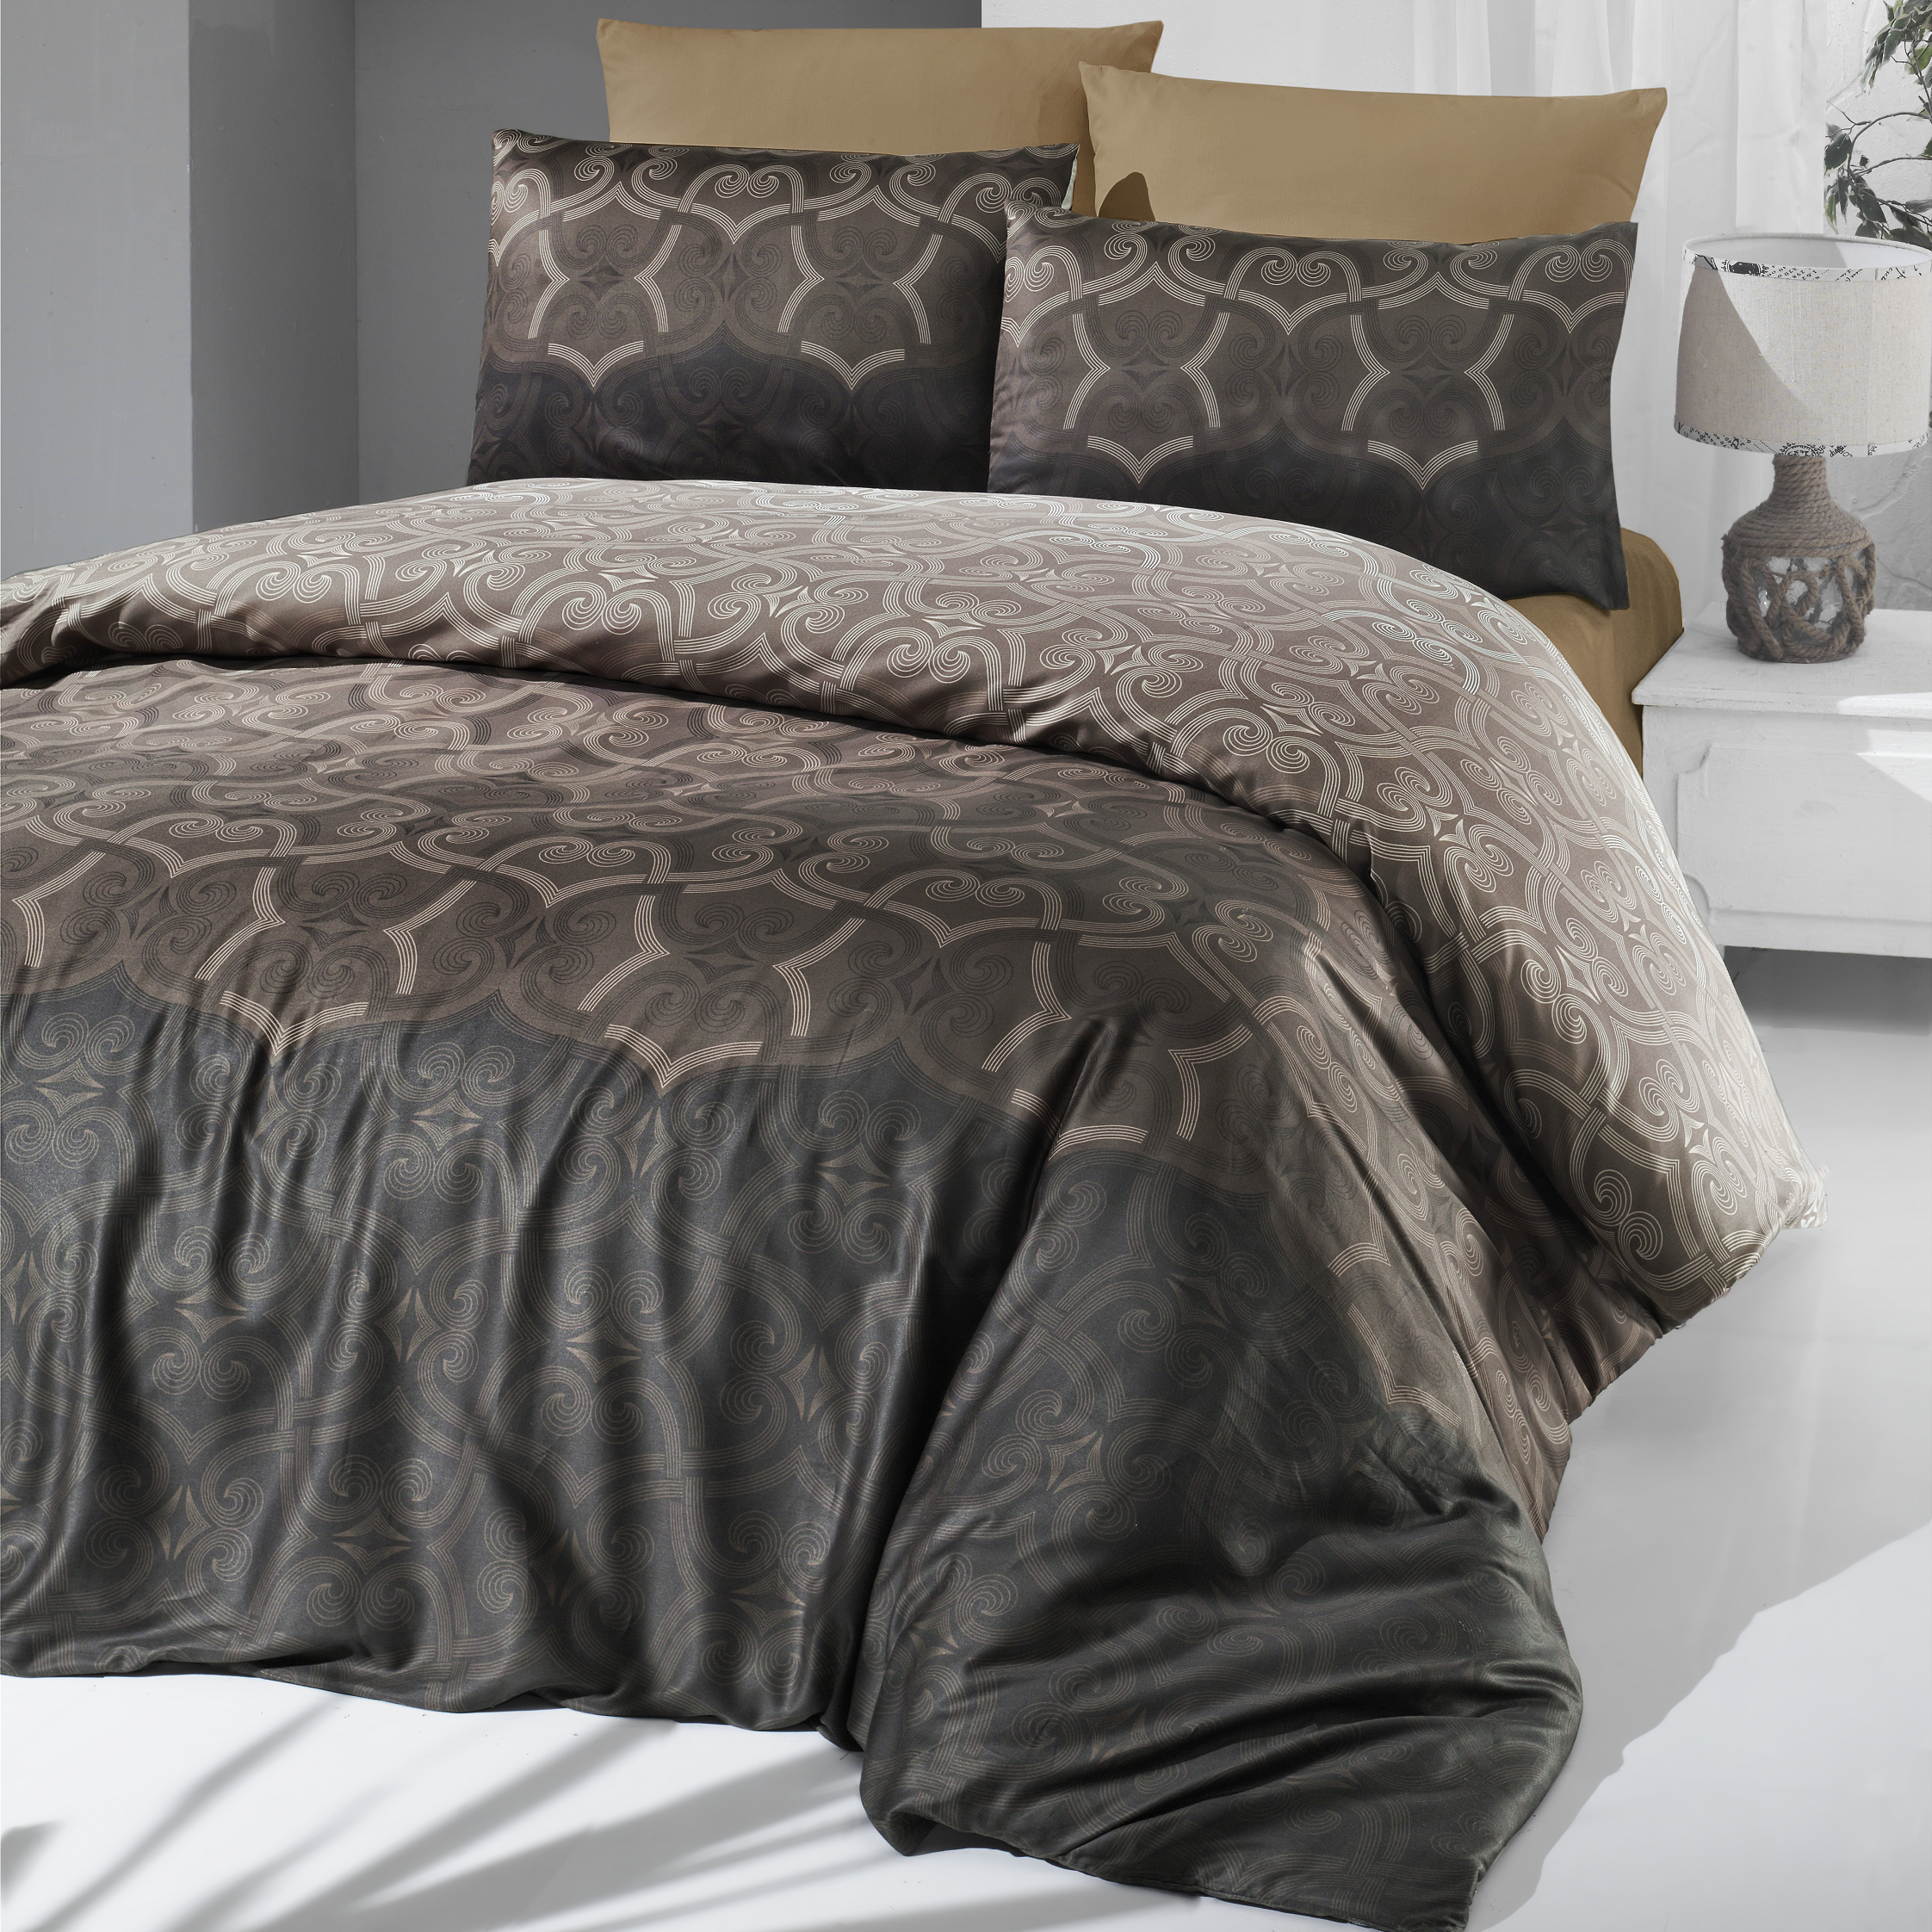 Комплект постельного белья Victoria Sateen Pandora Brown, сатин, евростандарт, 220х200 см, коричневый (2200000551719) - фото 1